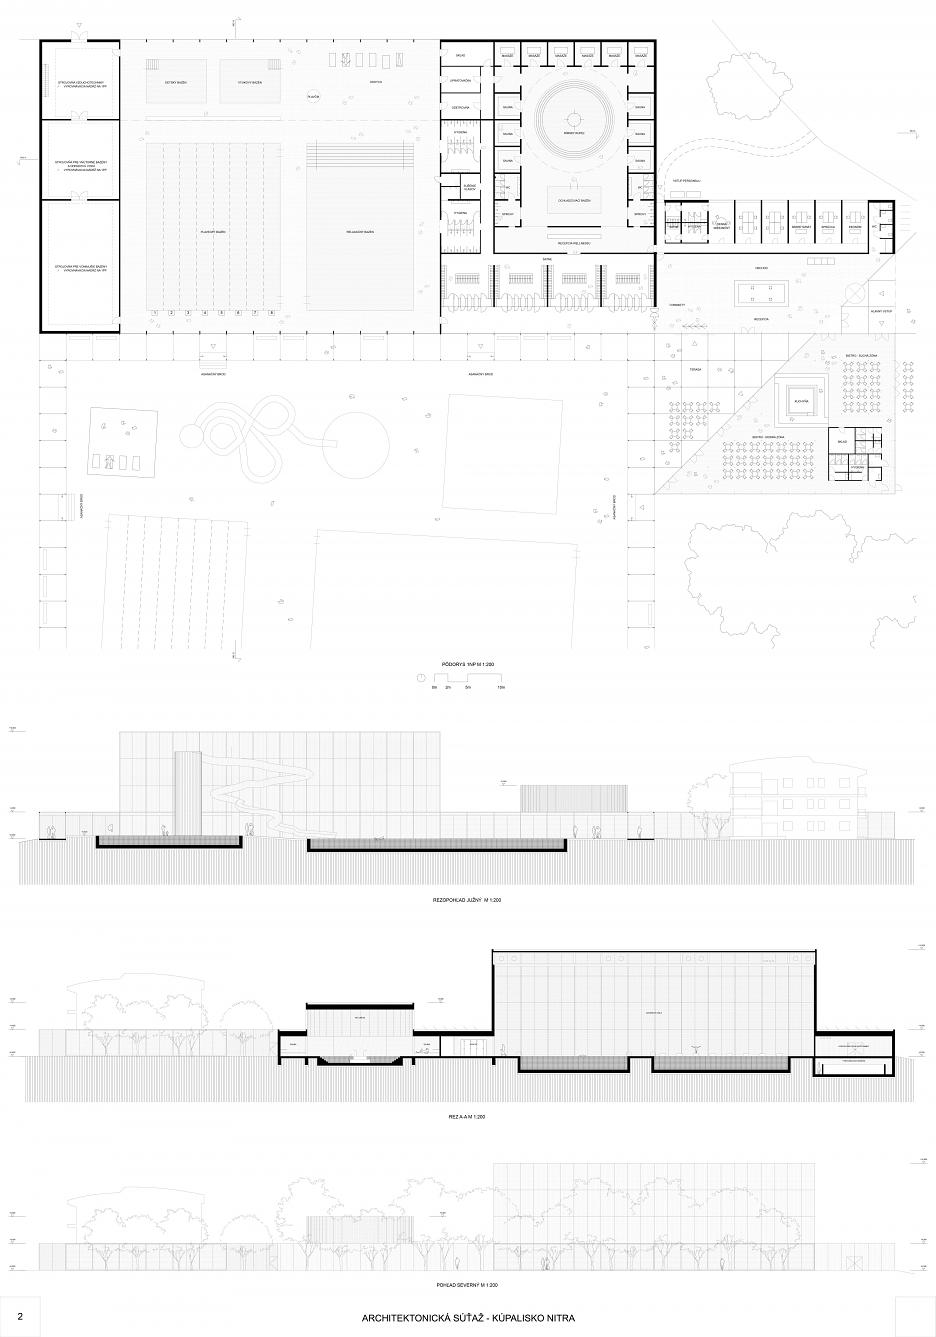 Architektonická súťaž na dostavbu areálu kúpaliska na Sihoti - víťazné návrhy